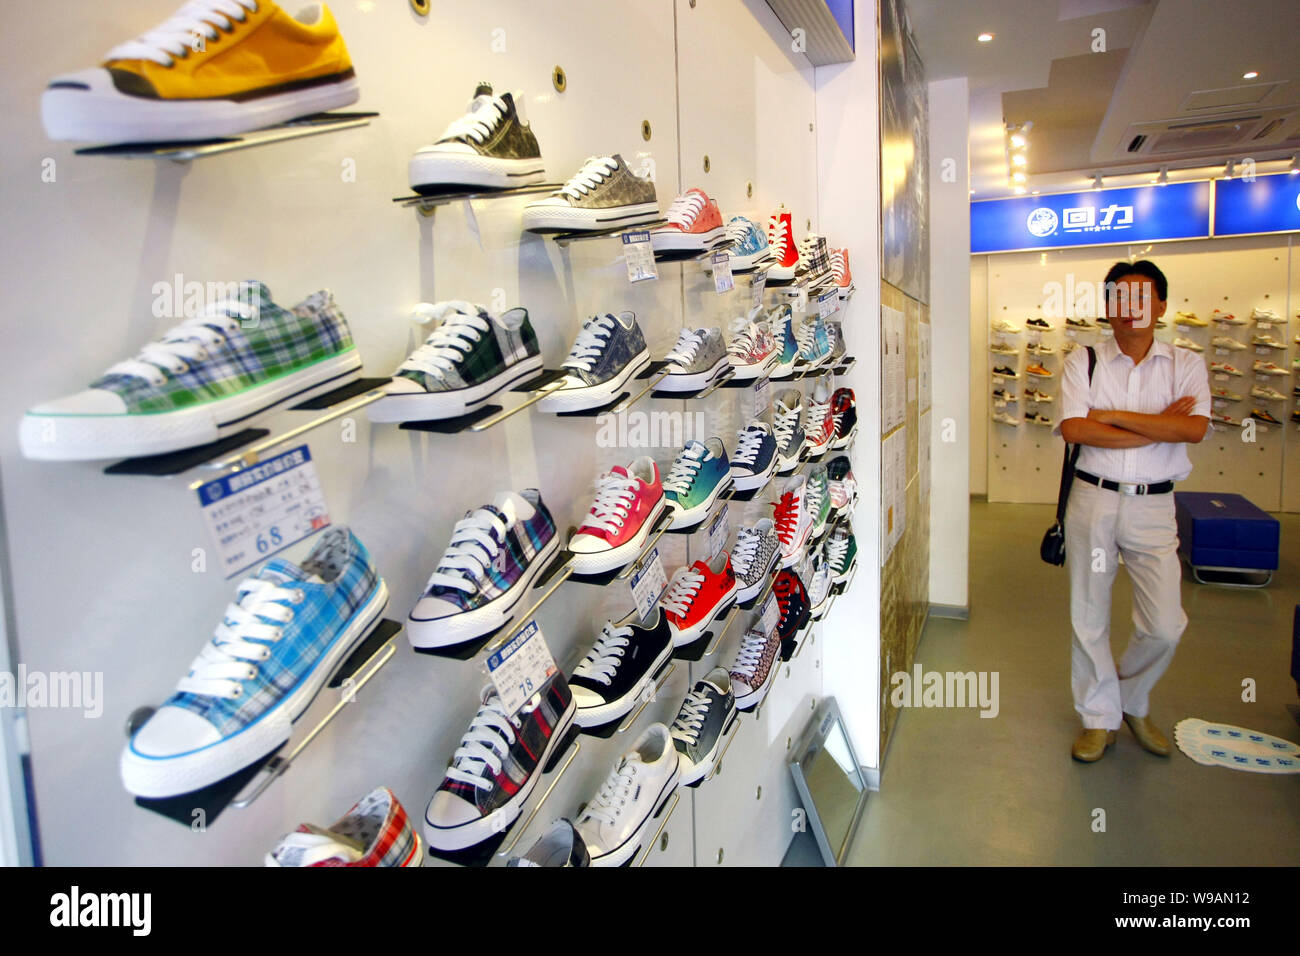 Un client chinois boutiques pour baskets dans un magasin de chaussures  phare de guerrier, mieux connu sous le nom de Huili en Chine, à Shanghai,  Chine, le 18 septembre 2010. Hu Photo